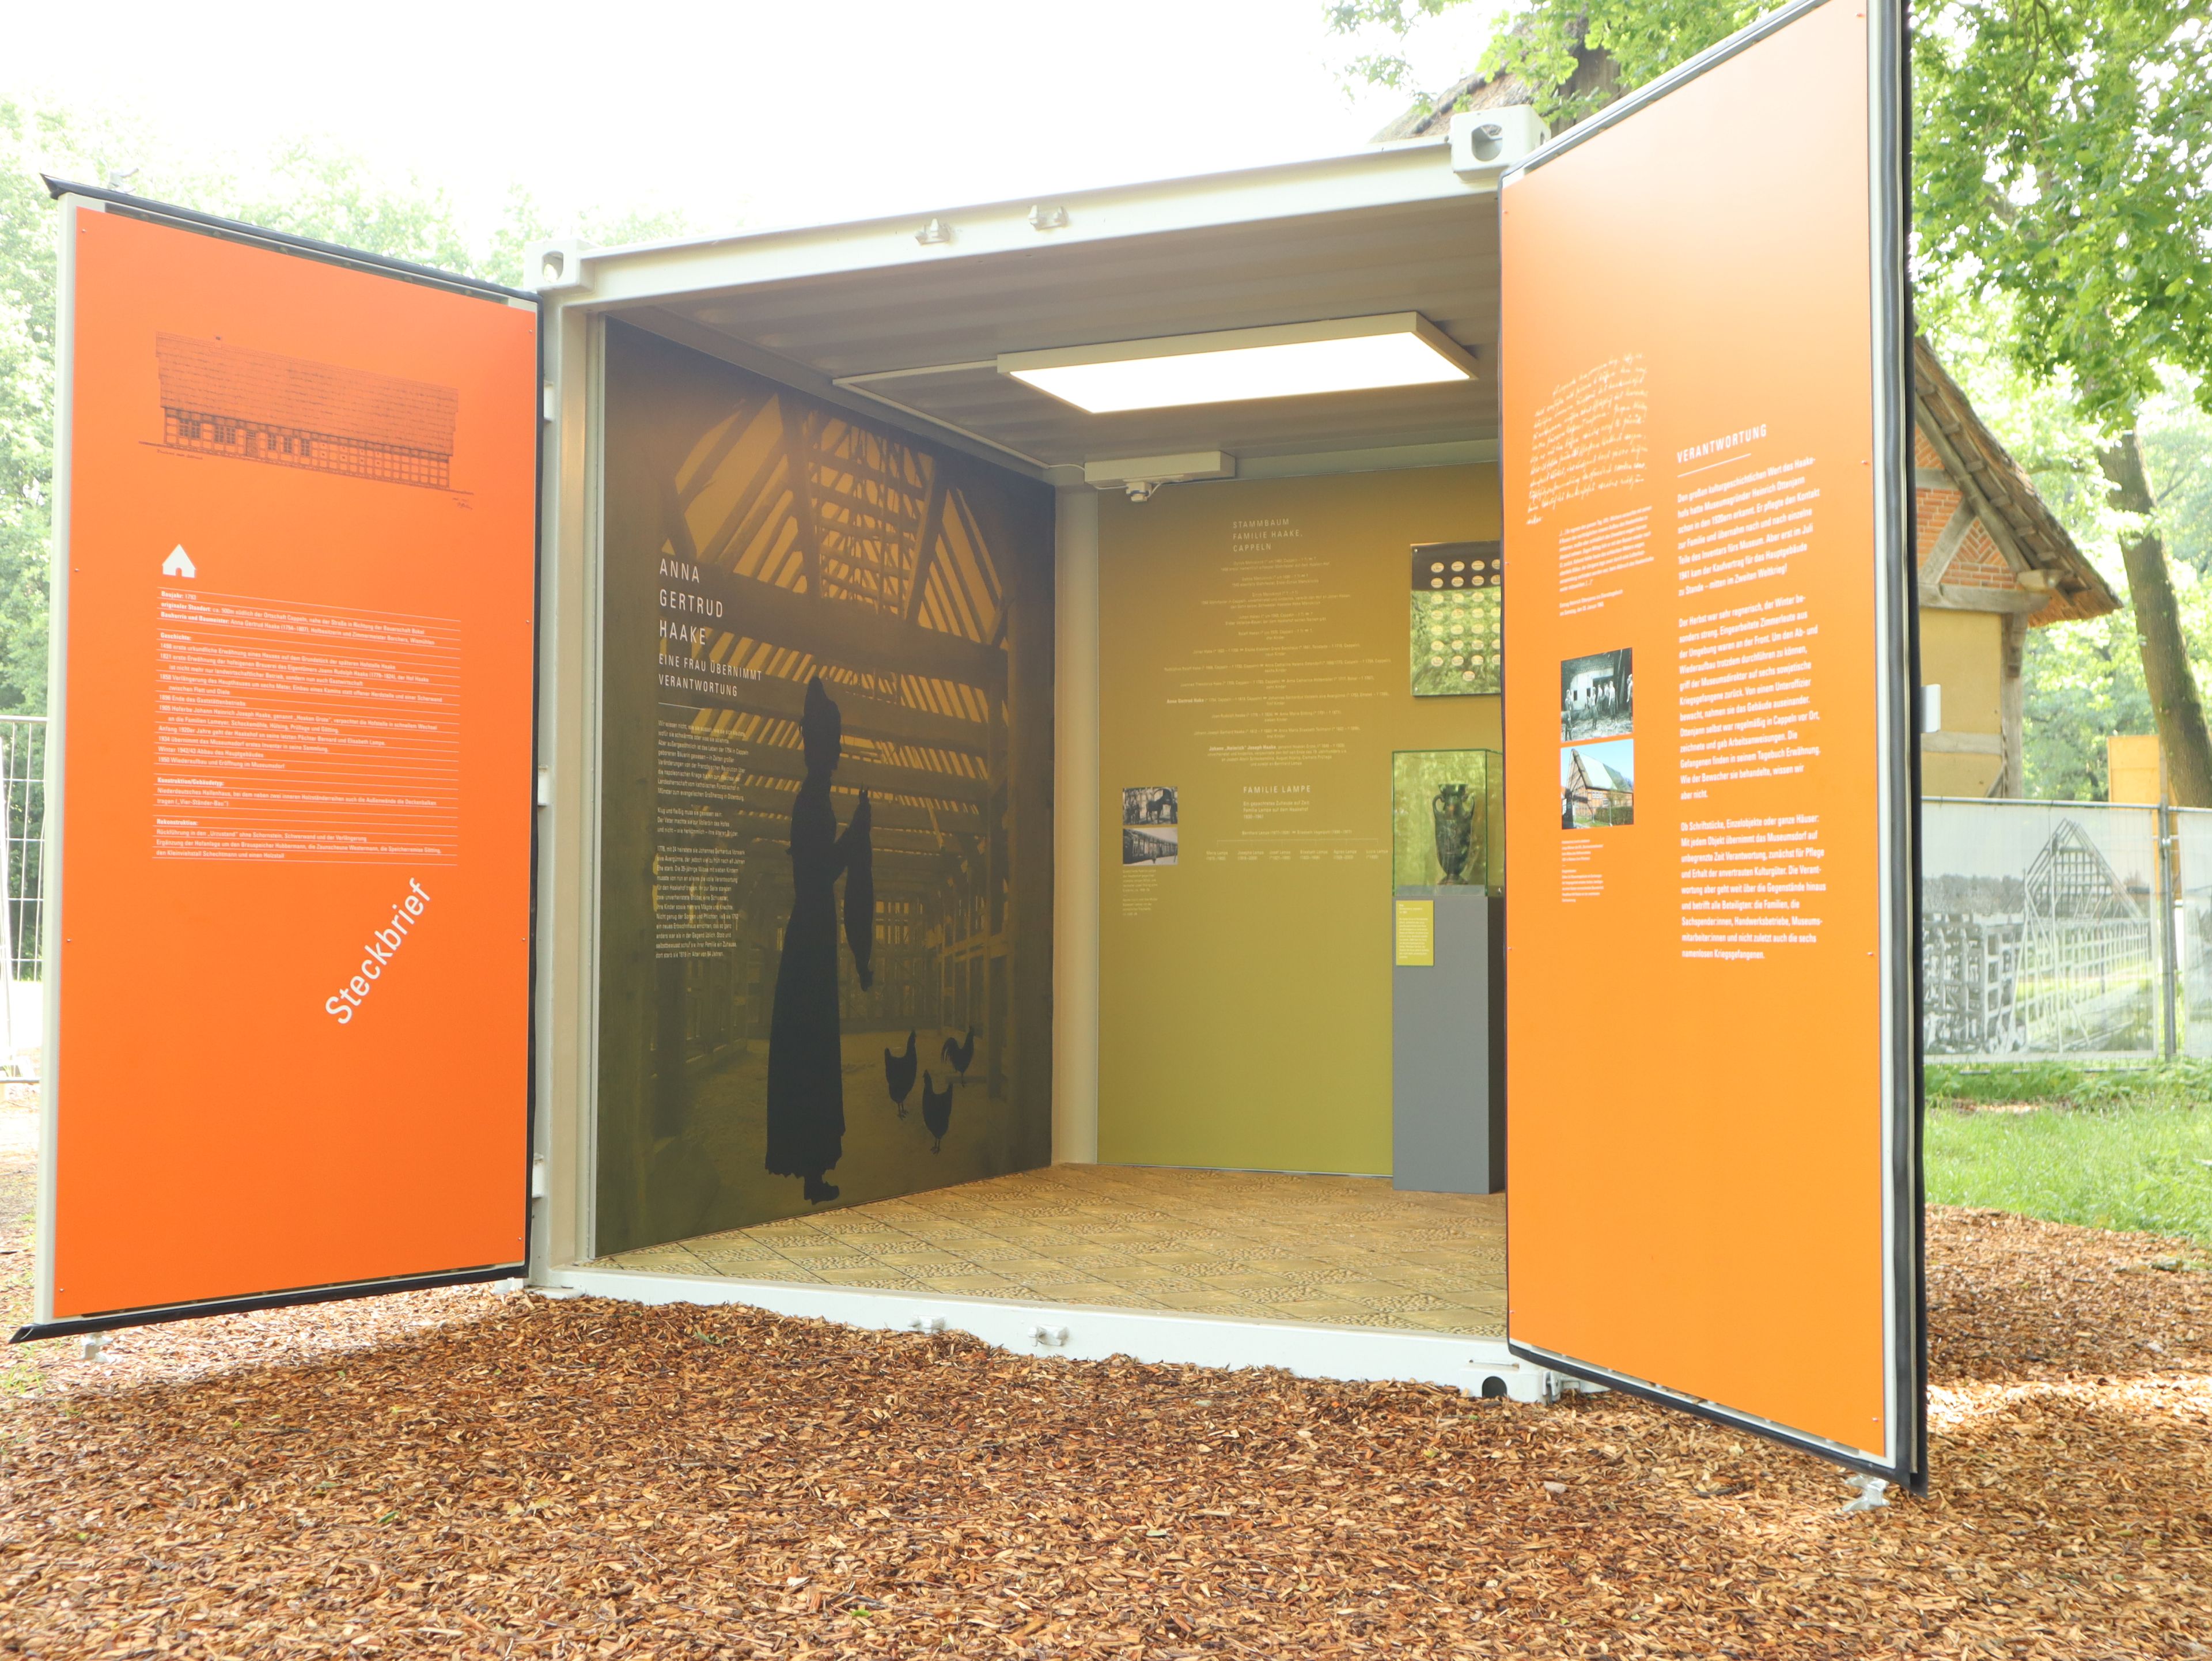 Einblick in eine Infobox der Jubiläumsausstellung des Museumsdorfs Cloppenburg